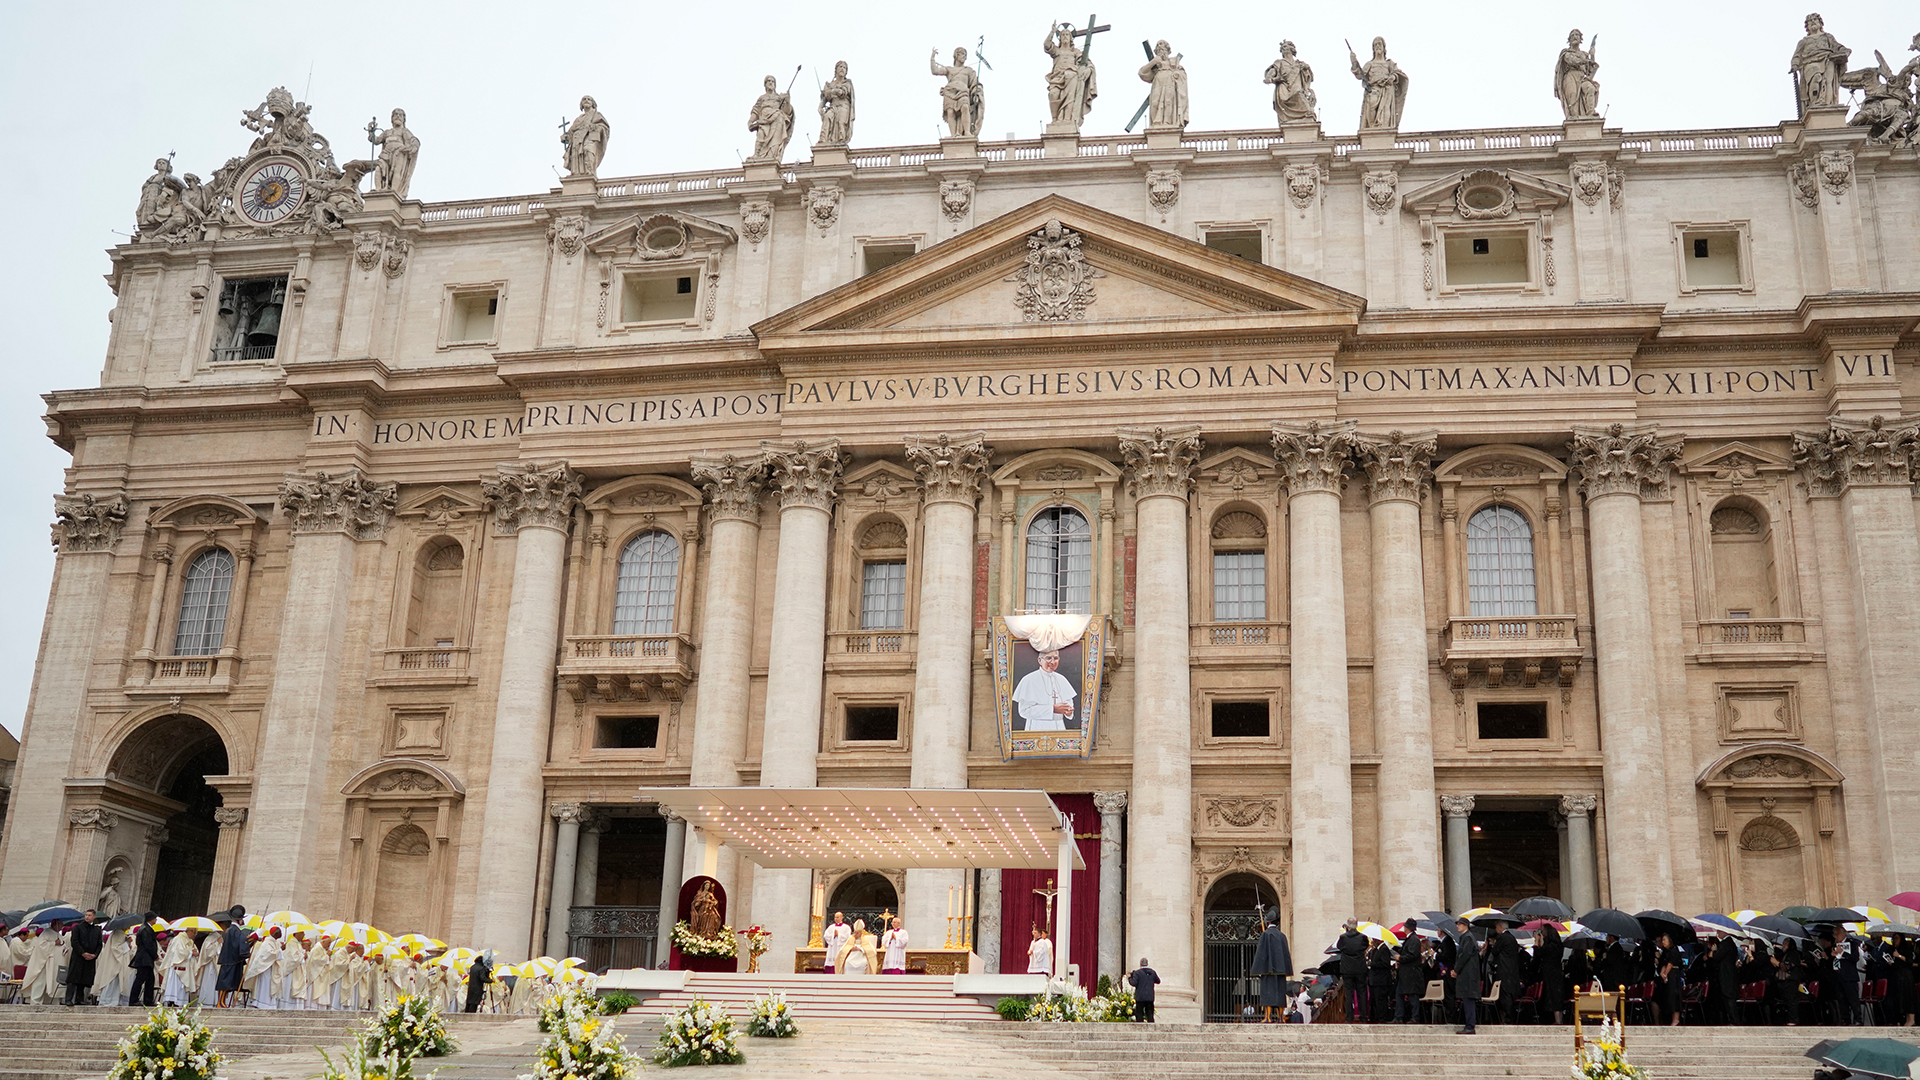 Der Wandteppich, der den verstorbenen Papst Johannes Paul I. zeigt, hängt während der von Papst Franziskus geleiteten Messe zur Seligsprechung im Vatikan an der Fassade des Petersdoms. | dpa